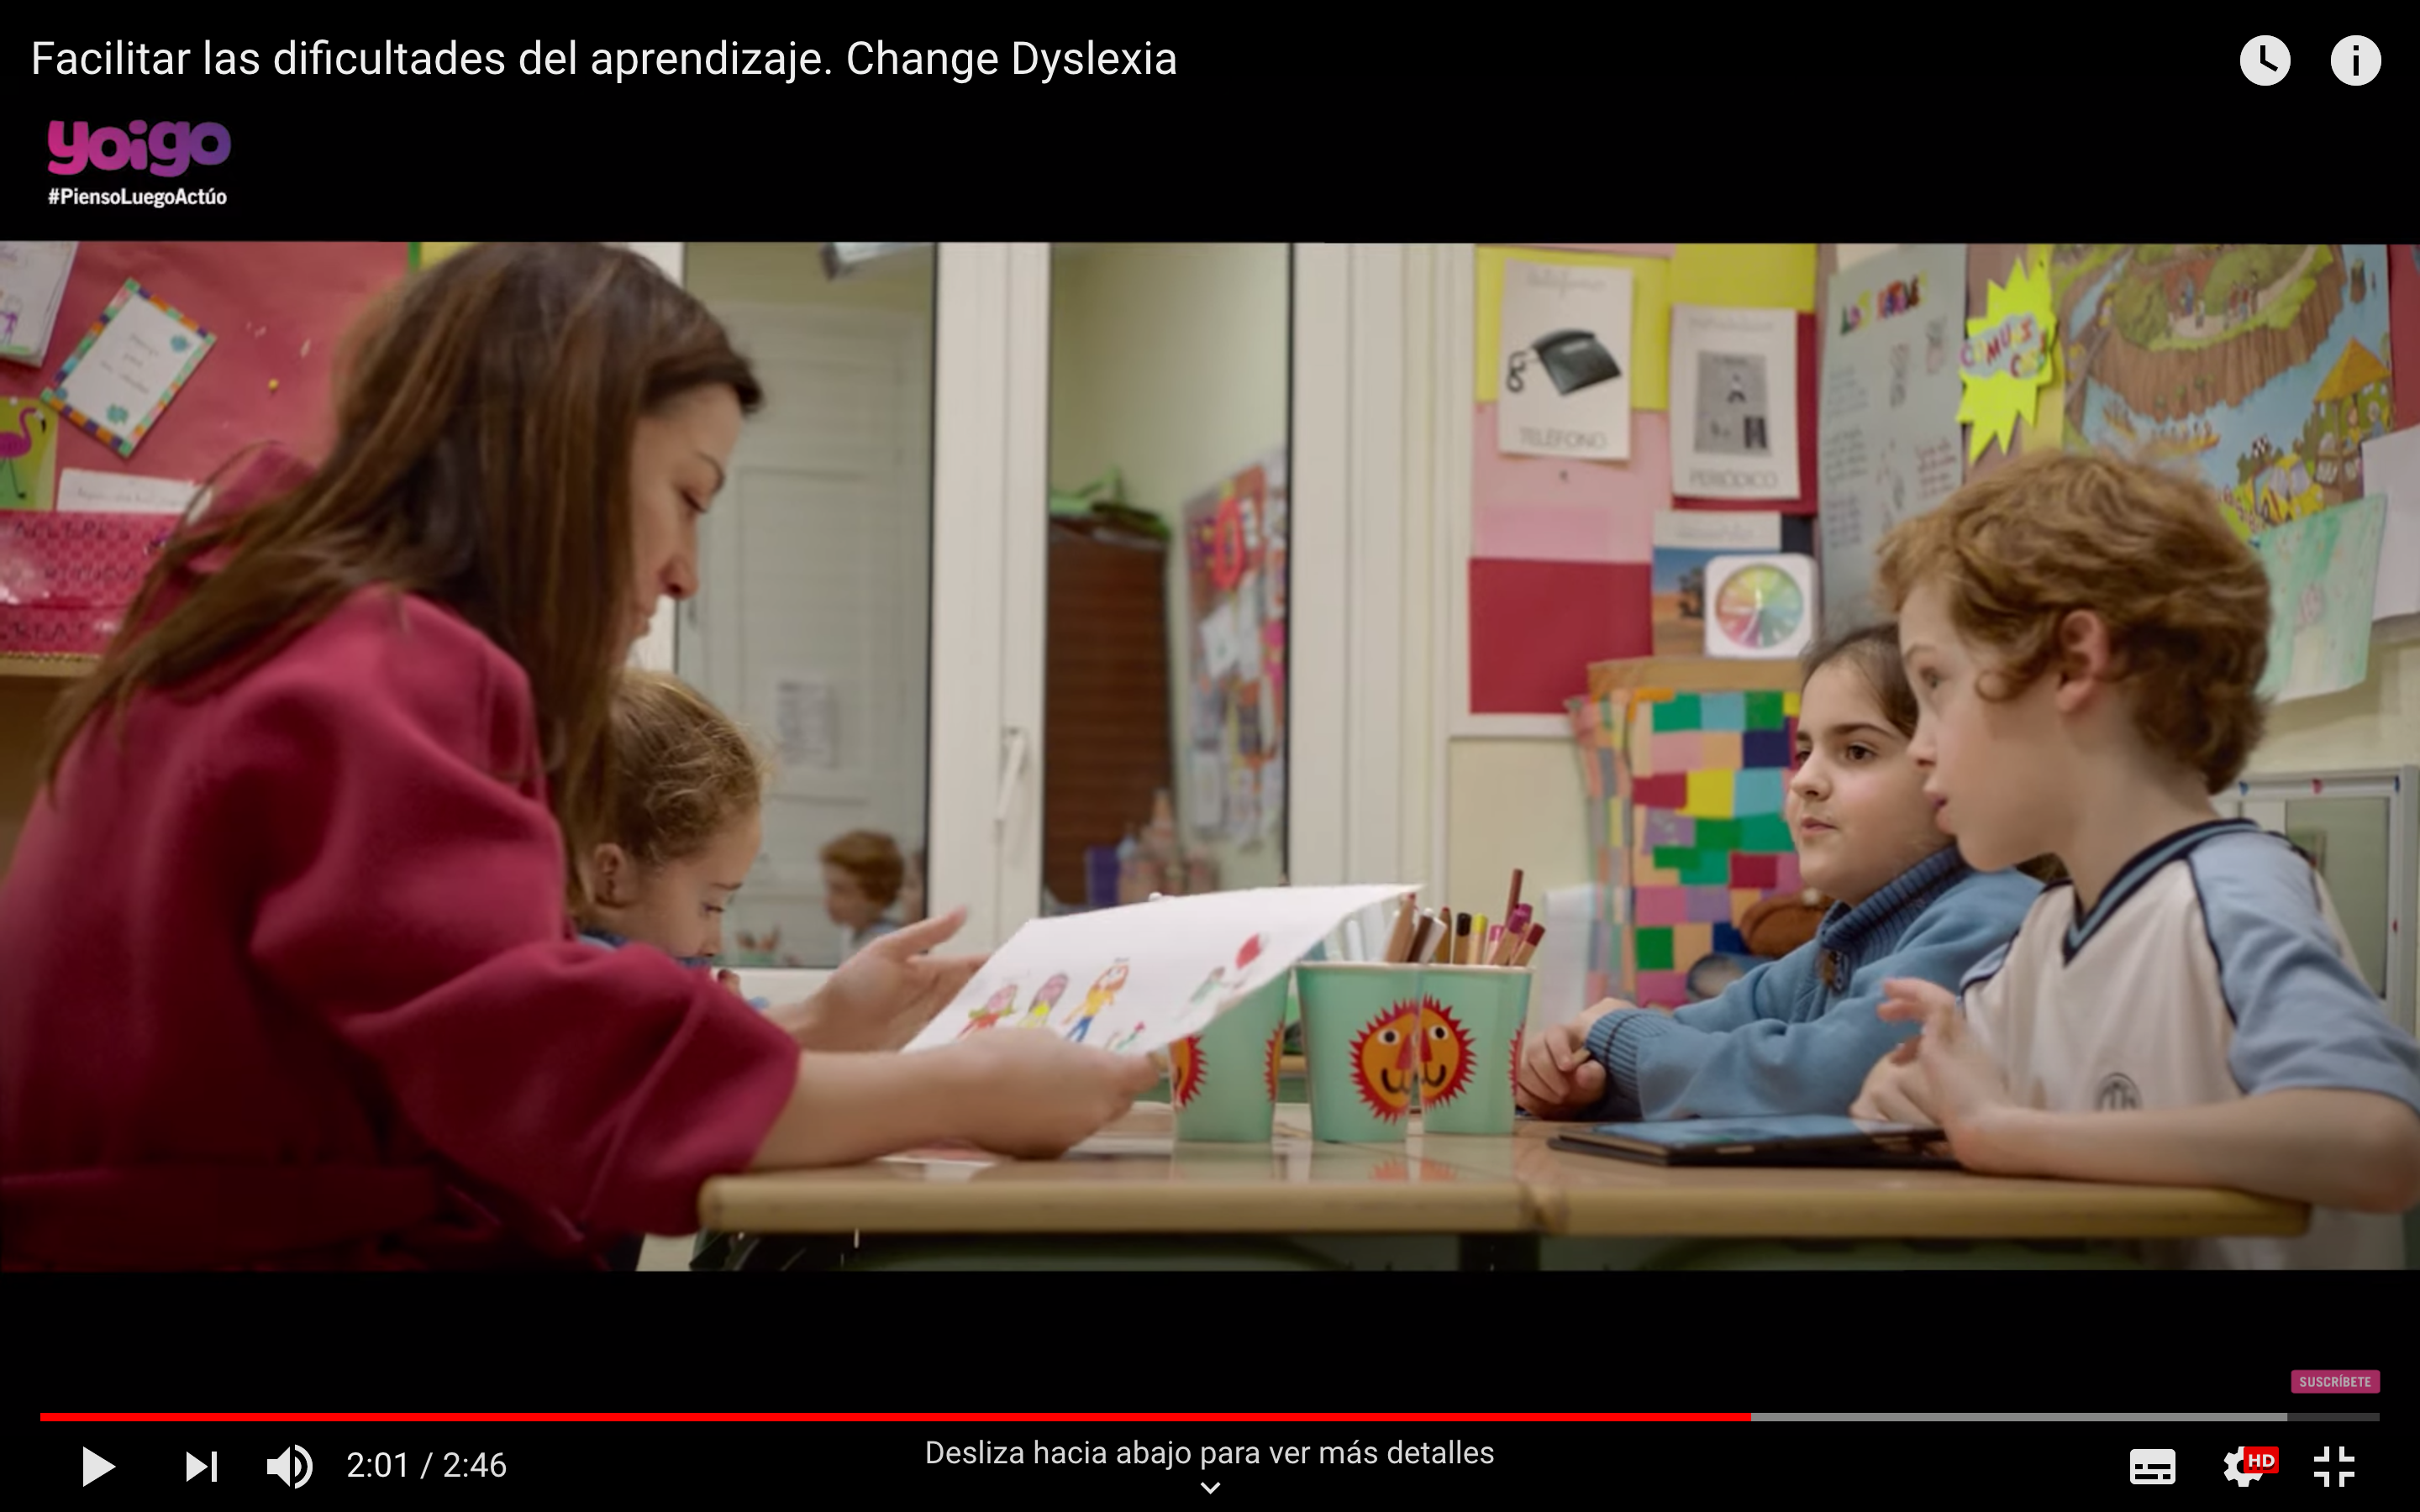 Change Dyslexia en Pienso luego actúo (El País): cuando los sueños no se escriben con palabras